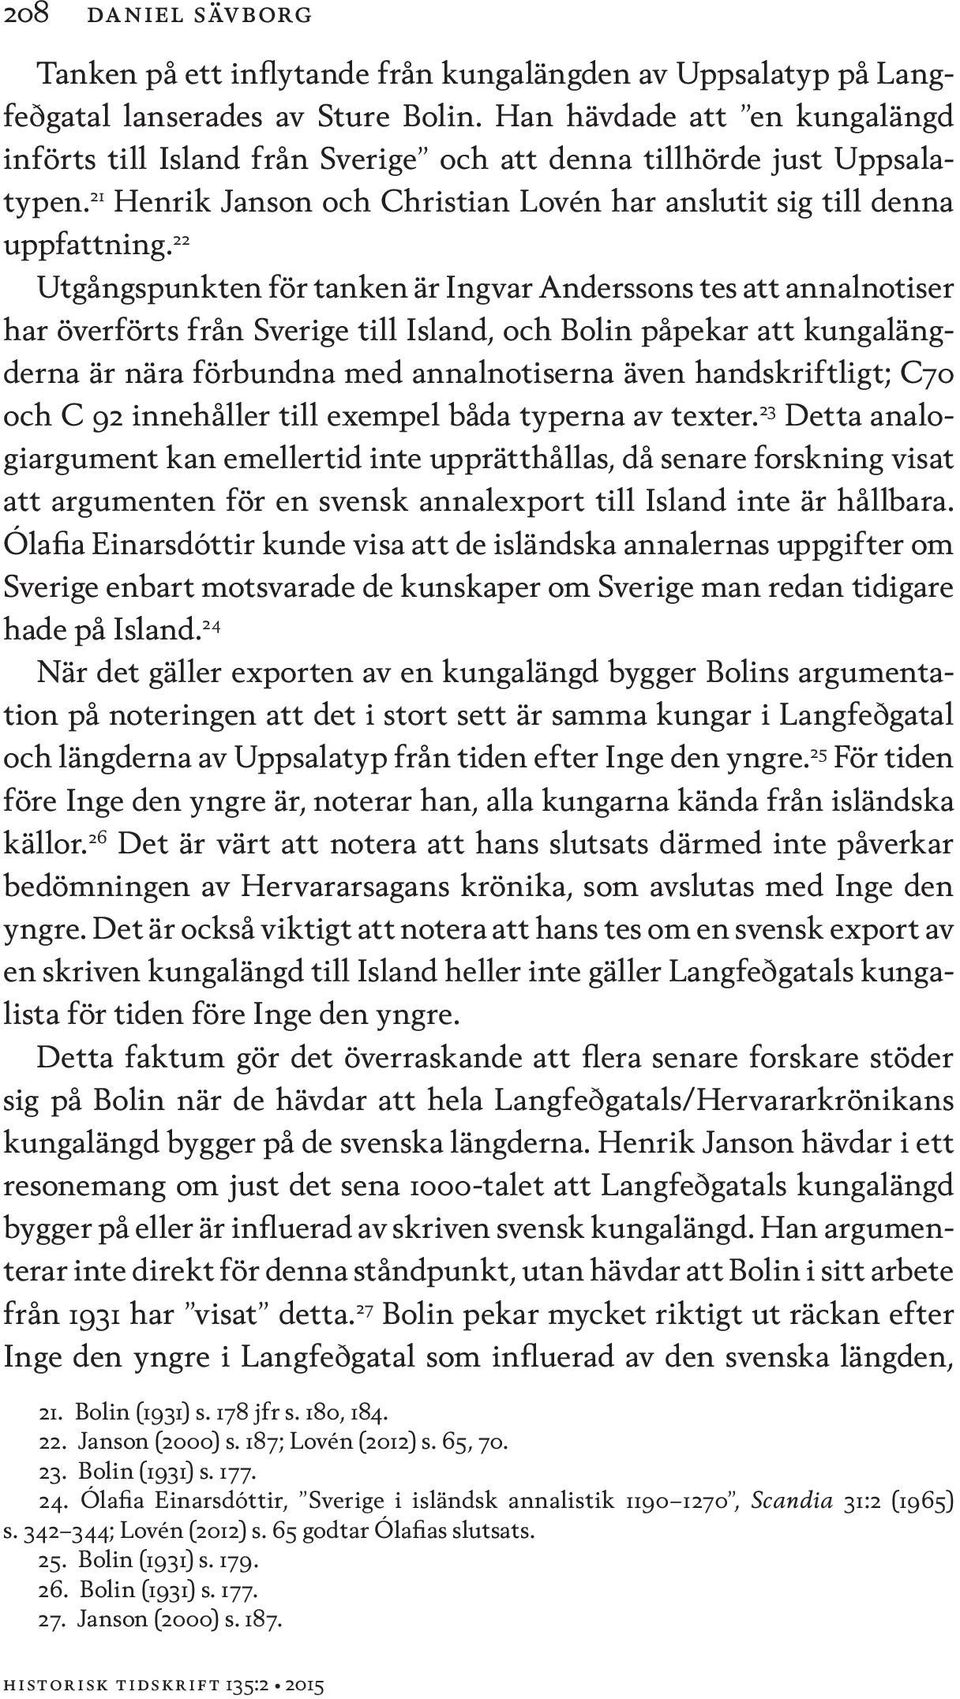 22 Utgångspunkten för tanken är Ingvar Anderssons tes att annalnotiser har överförts från Sverige till Island, och Bolin påpekar att kungalängderna är nära förbundna med annalnotiserna även